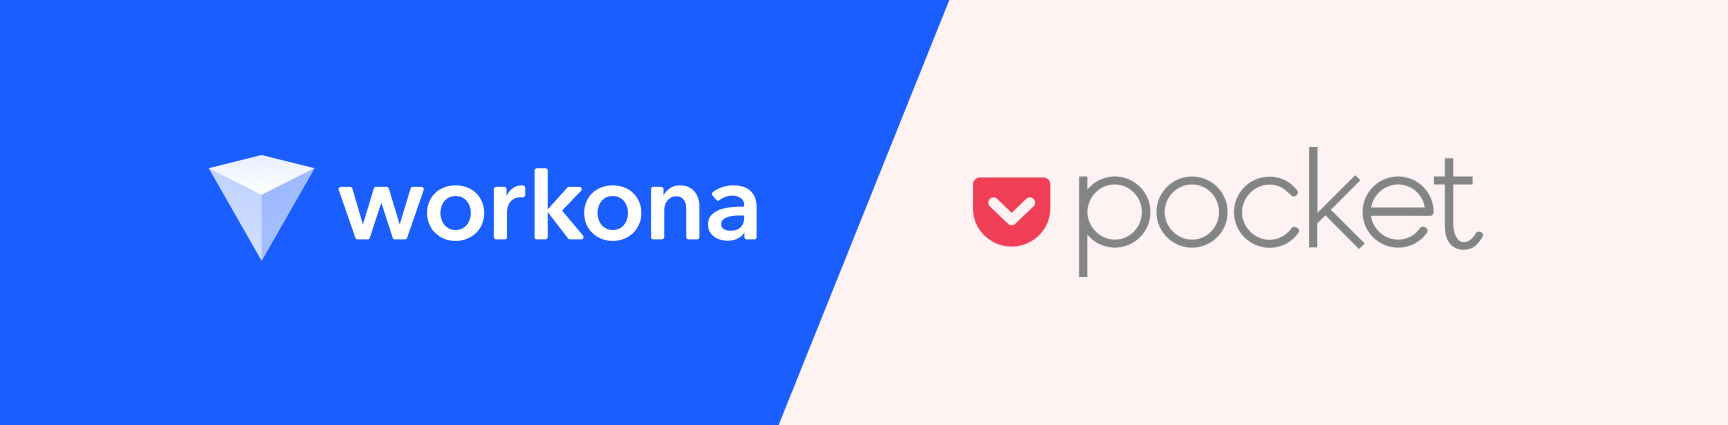 Workona logo on blue background facing off against Pocket logo on pink background